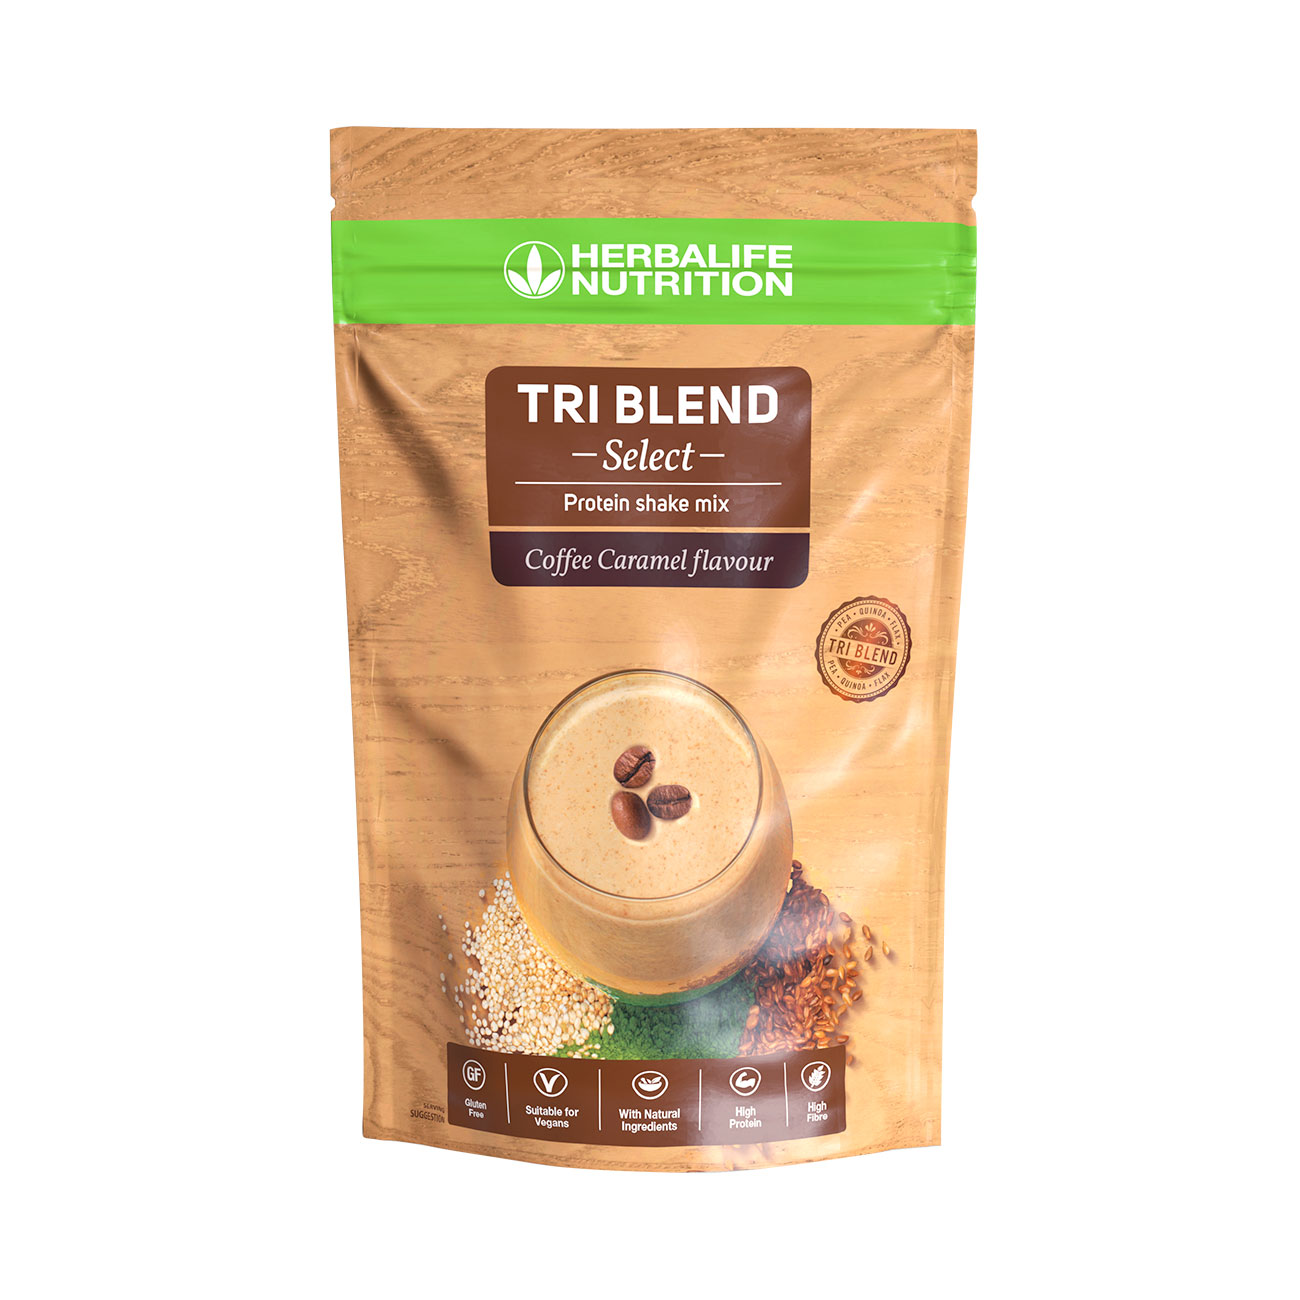 Tri Blend Select Cafe Caramel   shake proteine a base de proteines 100  vegetales : avec du pois, du quinoa et des graines de lin. Ingredients vegan naturels.